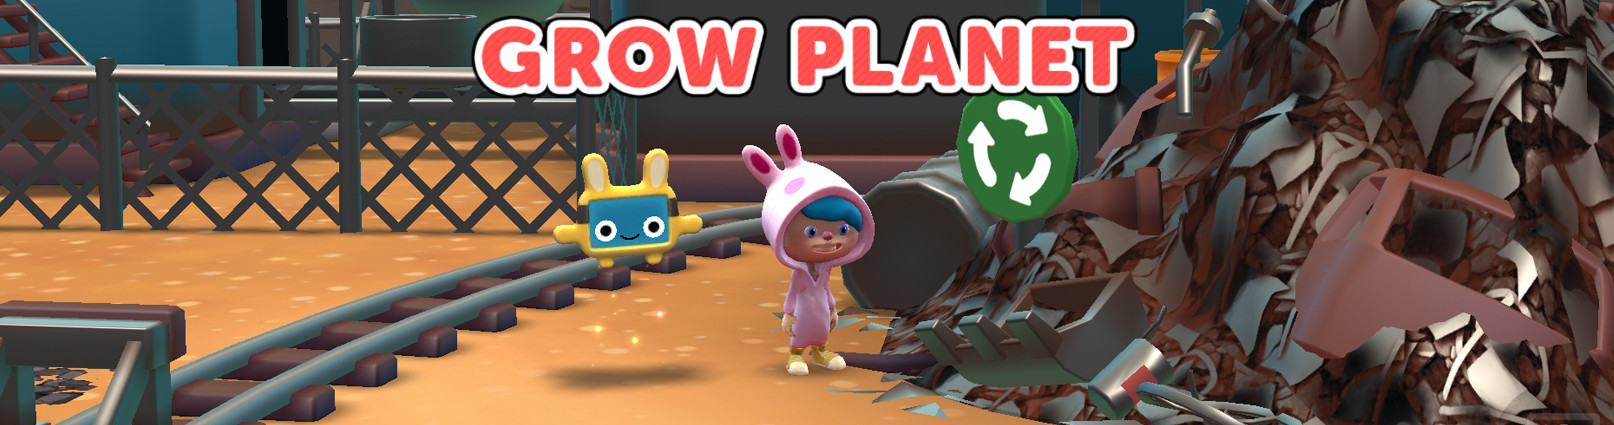 Grow Planet: Spelbaserat lärande, åk 1-6 i NO, teknik, matematik och hållbar utveckling